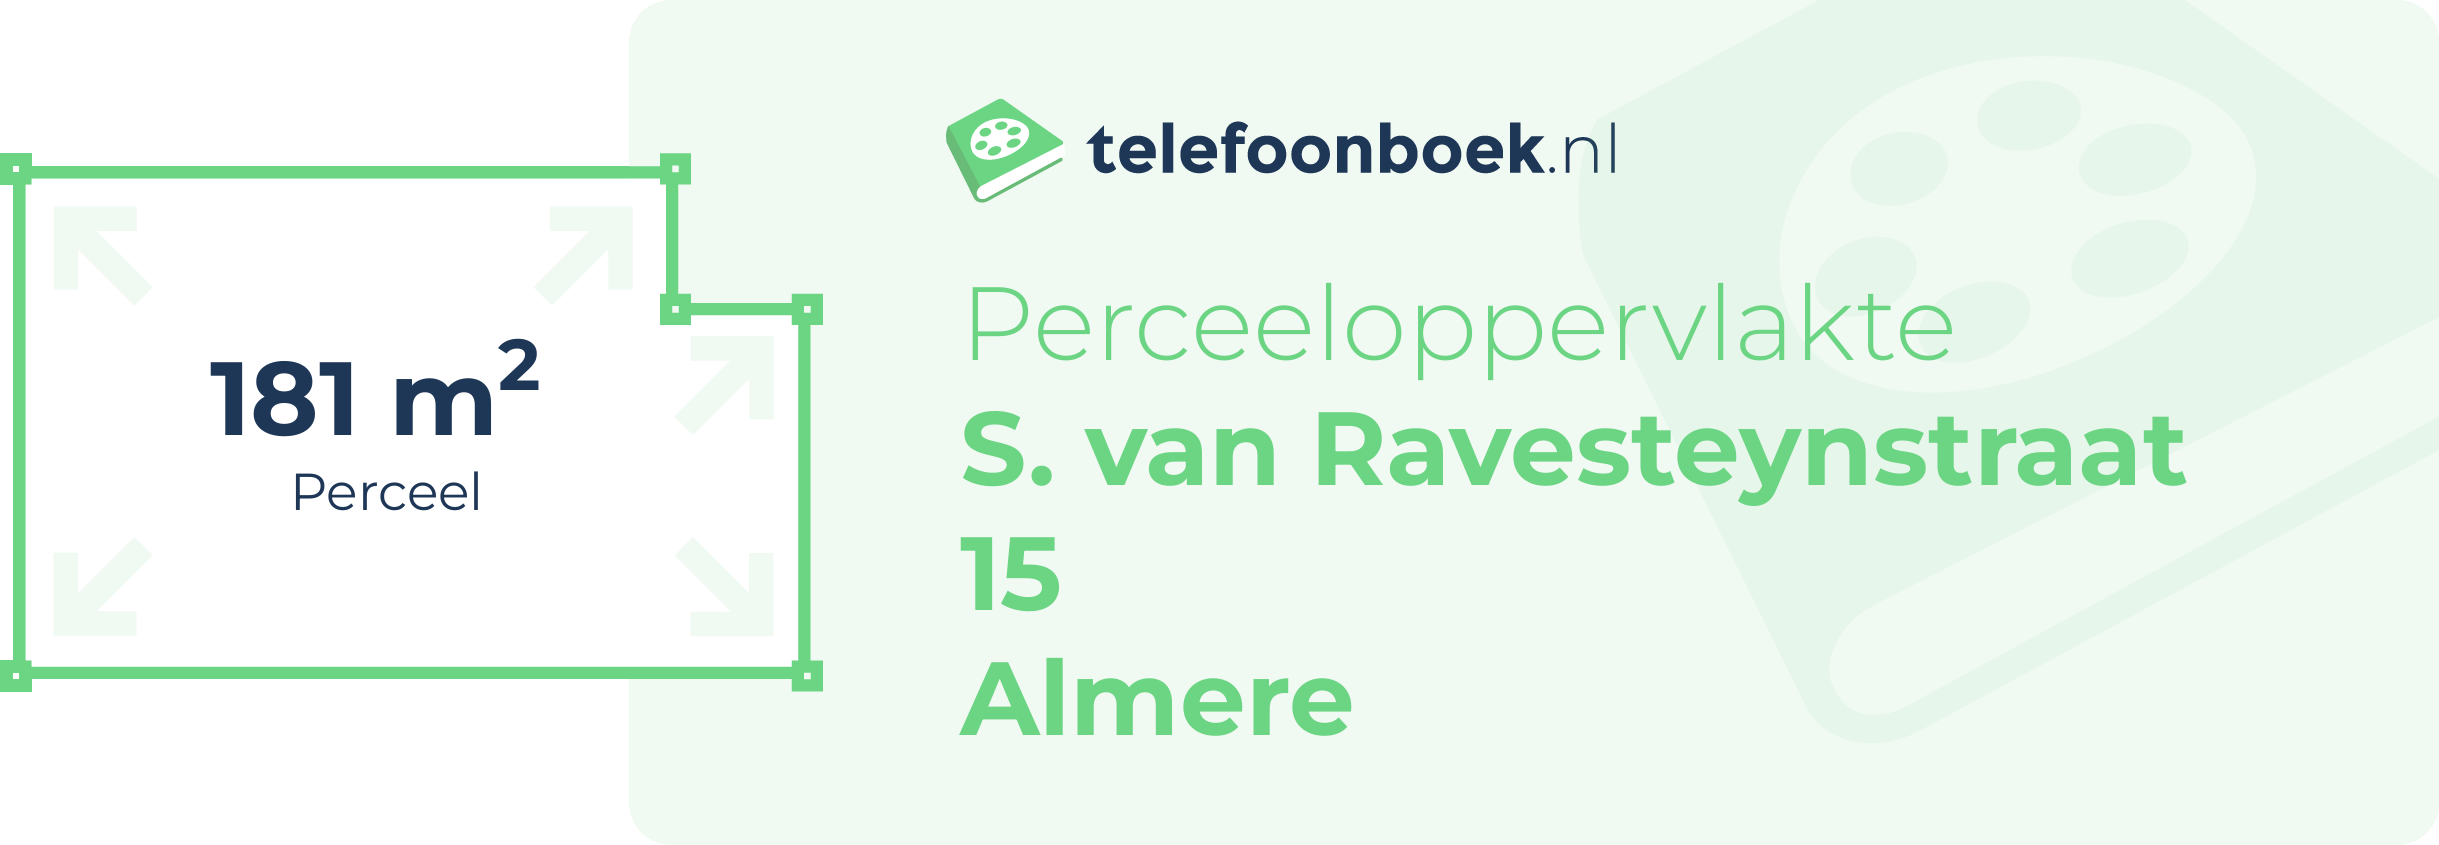 Perceeloppervlakte S. Van Ravesteynstraat 15 Almere